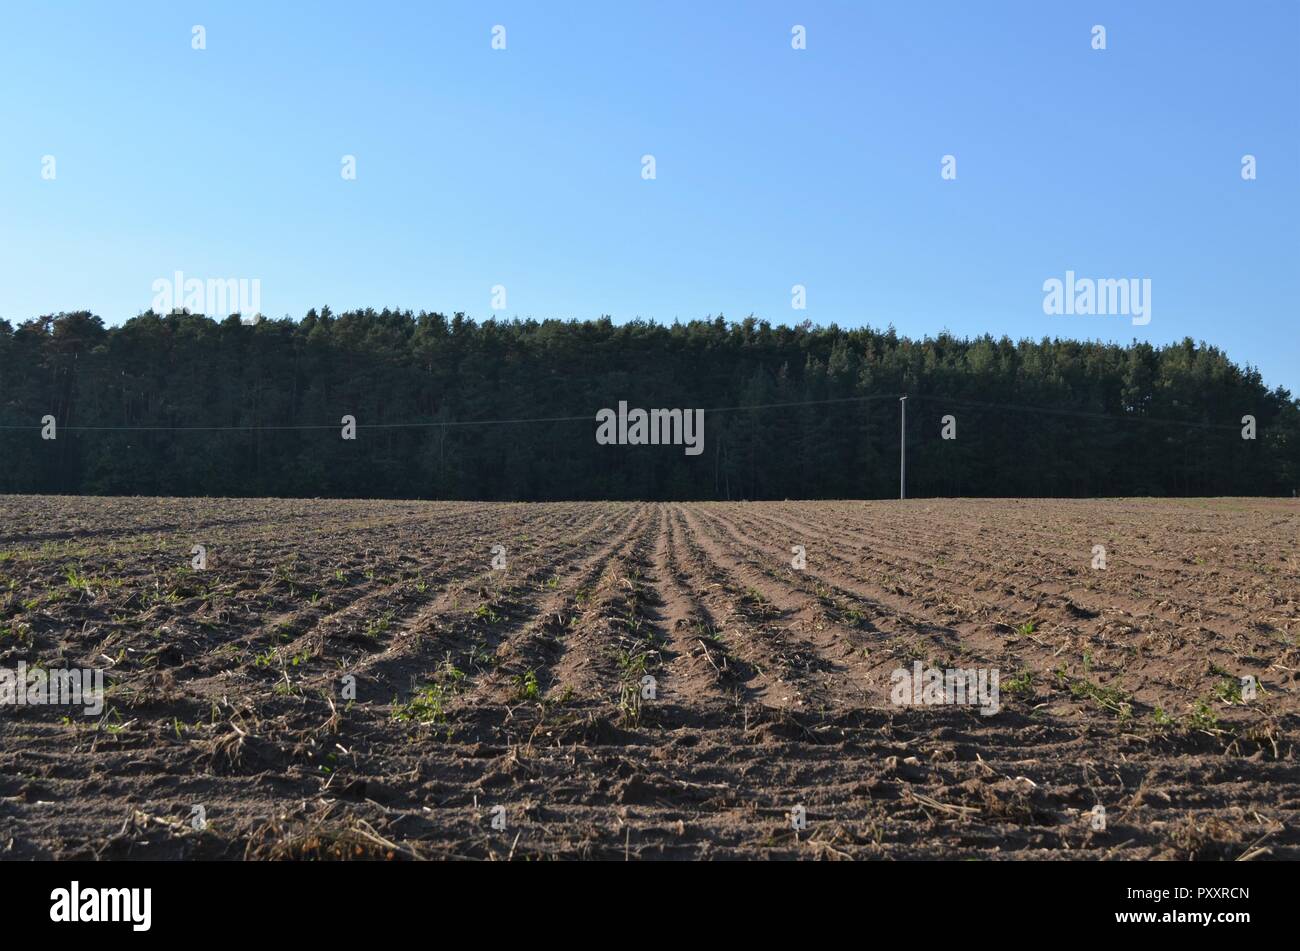 Braun weites Feld mit symmetrischen gerade horizontale und vertikale Linien als Symbol für die Landwirtschaft, Landwirtschaft, Arbeit mit kleinen Pflanzen Stockfoto